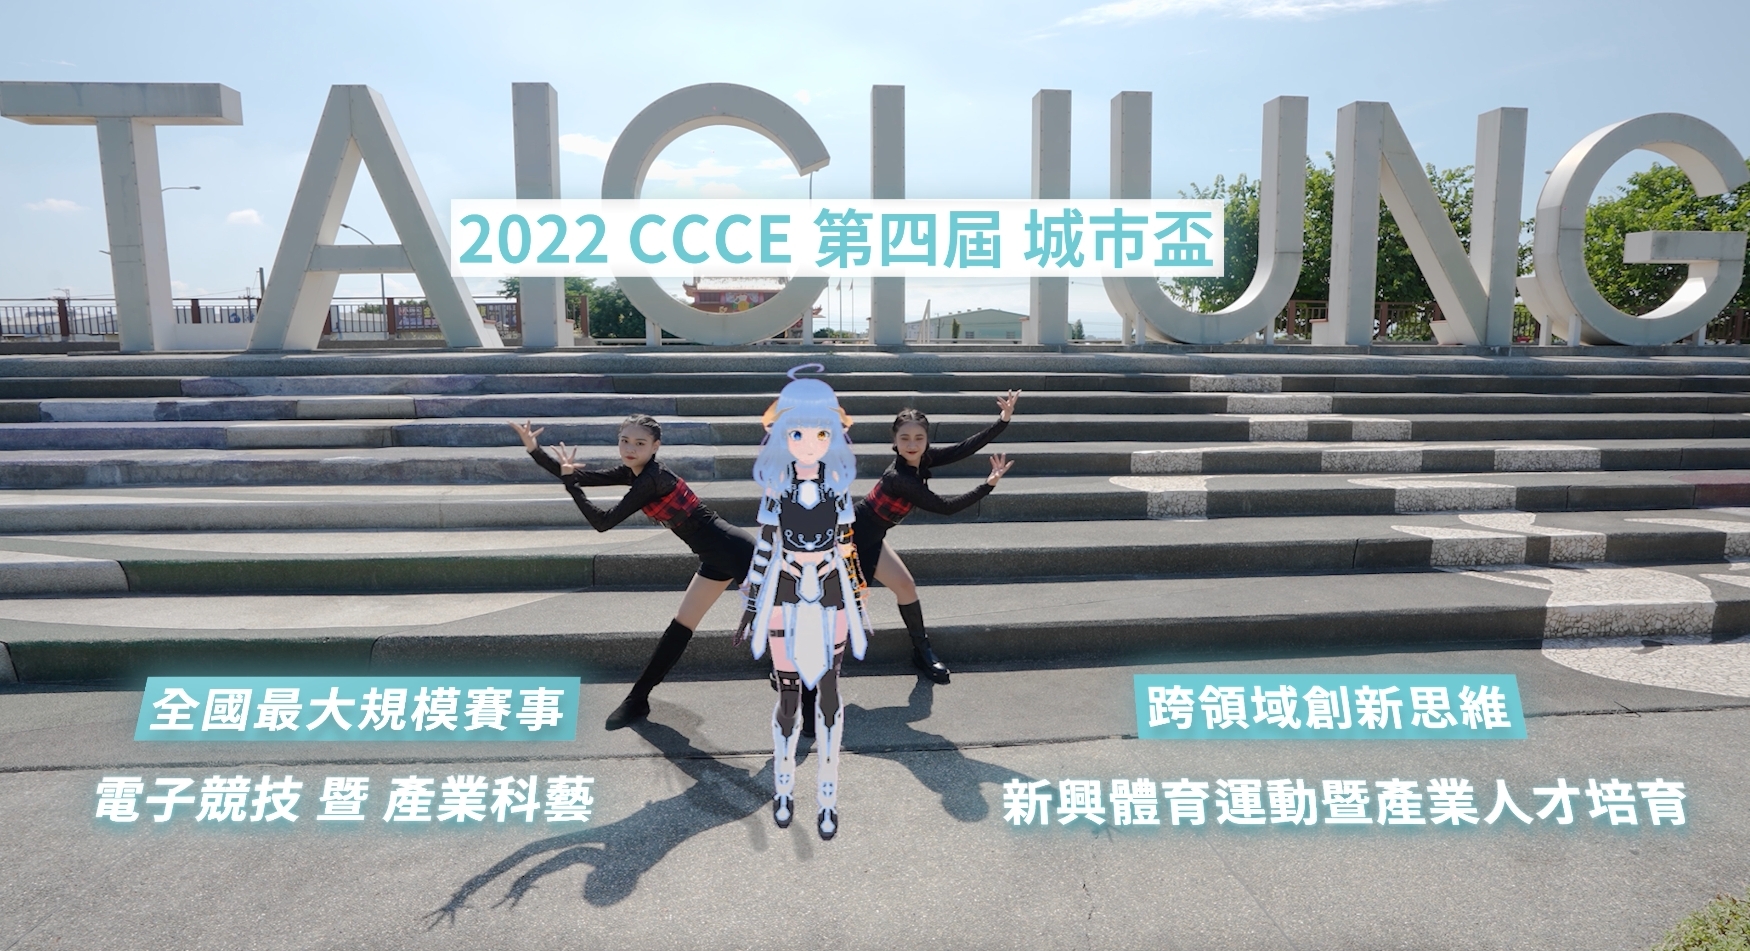 中市主辦2022 CCCE城市盃數位科藝電競邀請賽  搭元宇宙風潮Vtuber助行銷